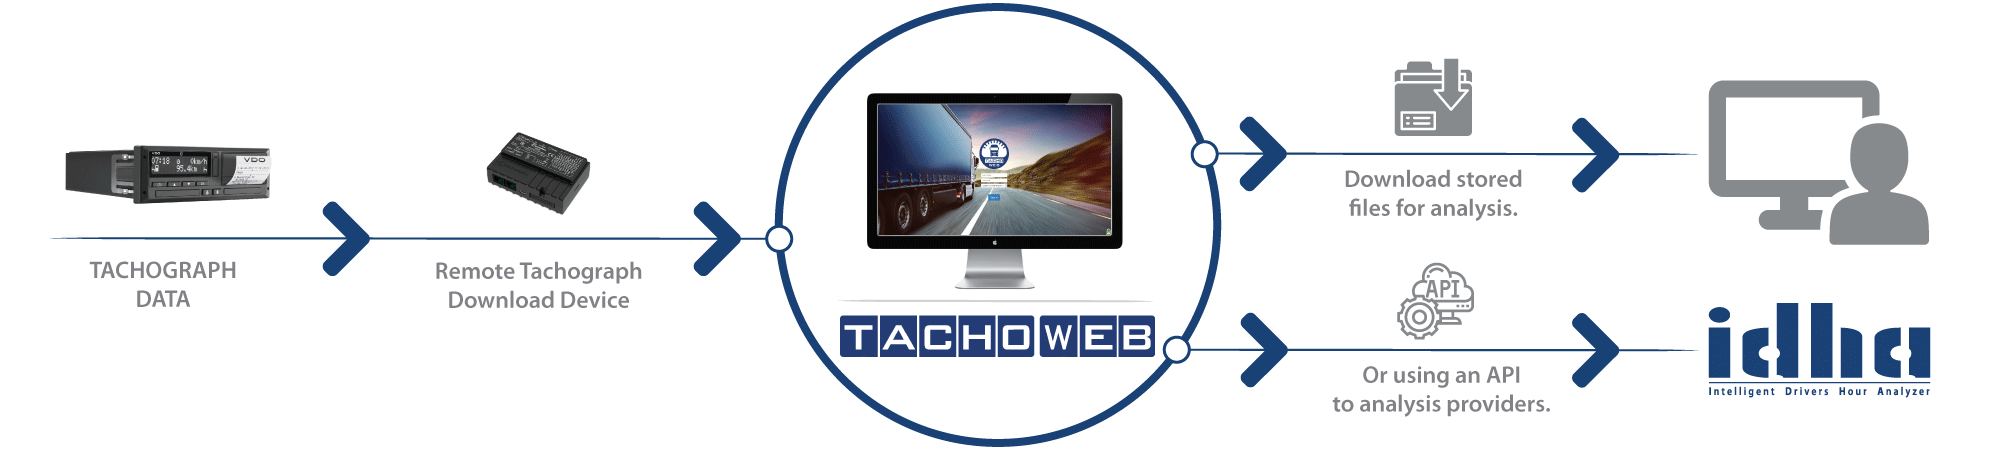 Remote-Tachograph-Download